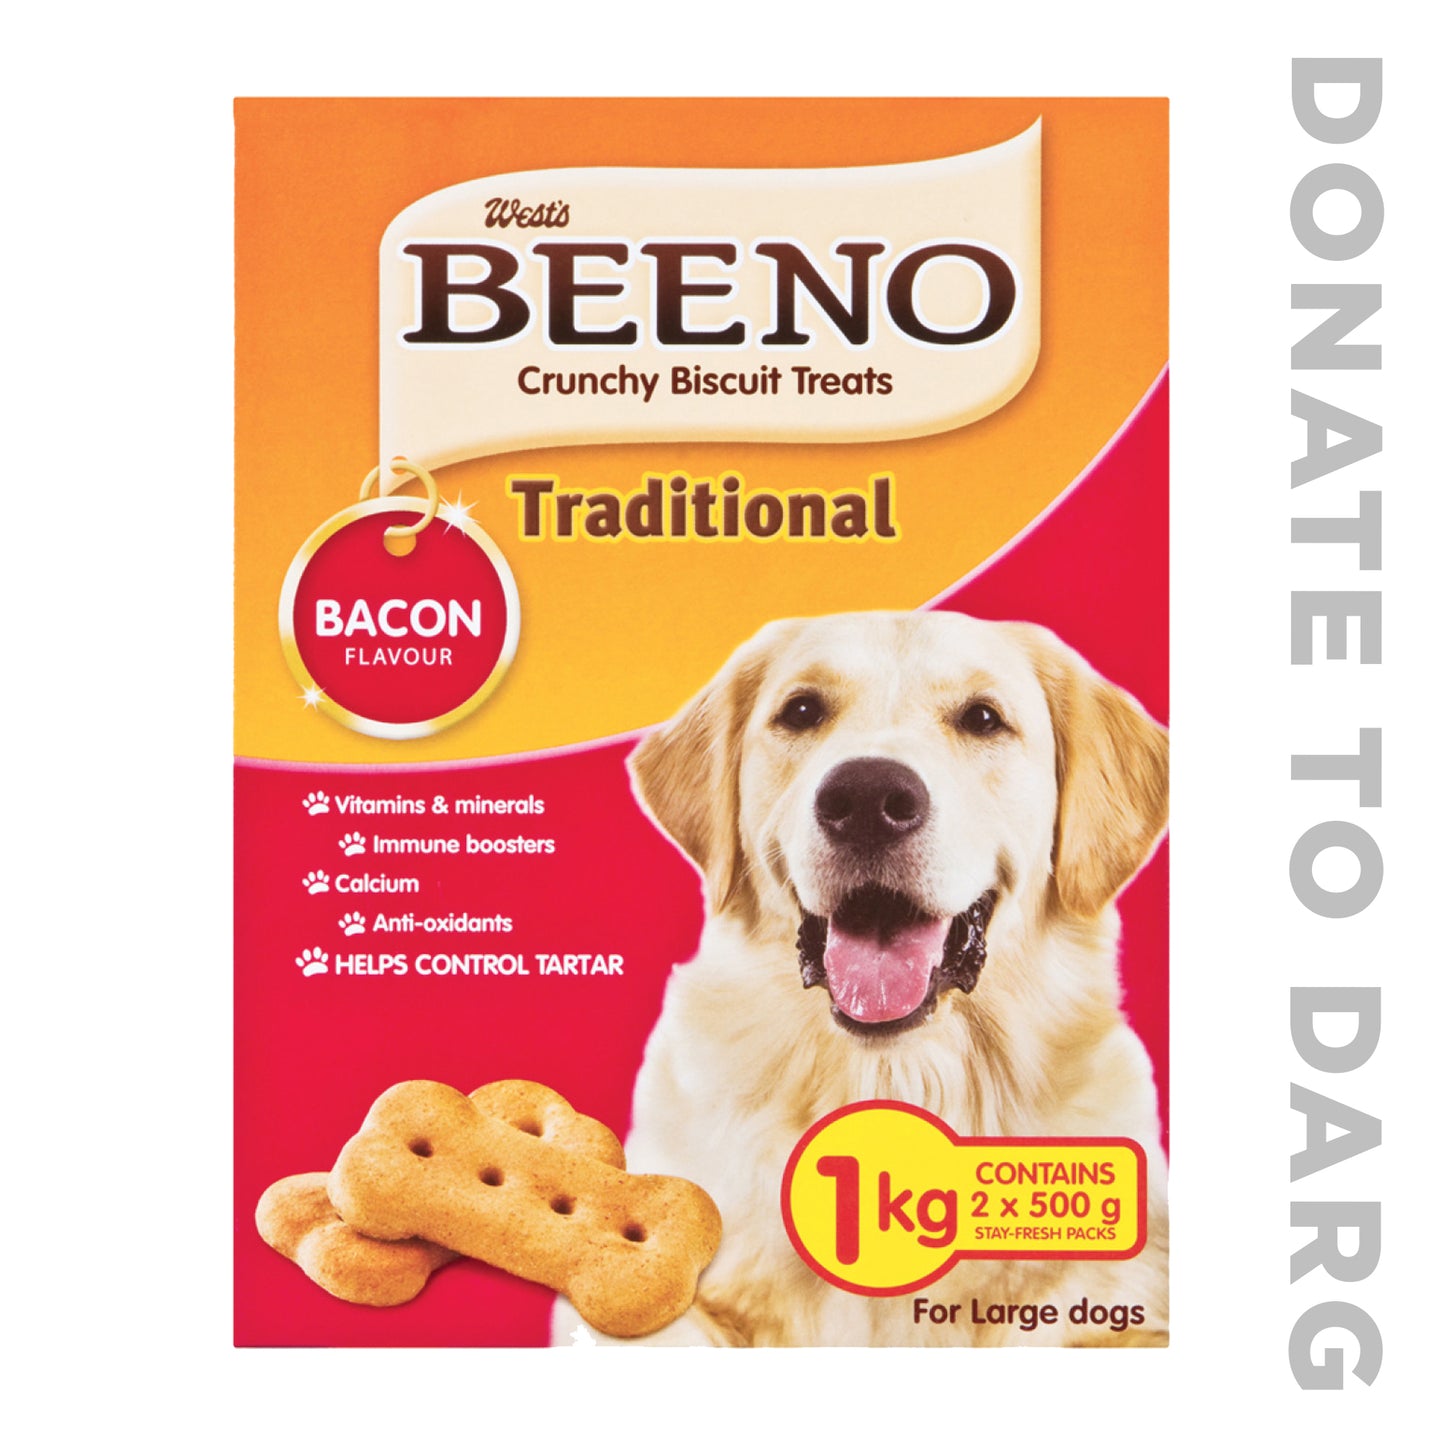 BEENO DOG TREATS DONATION